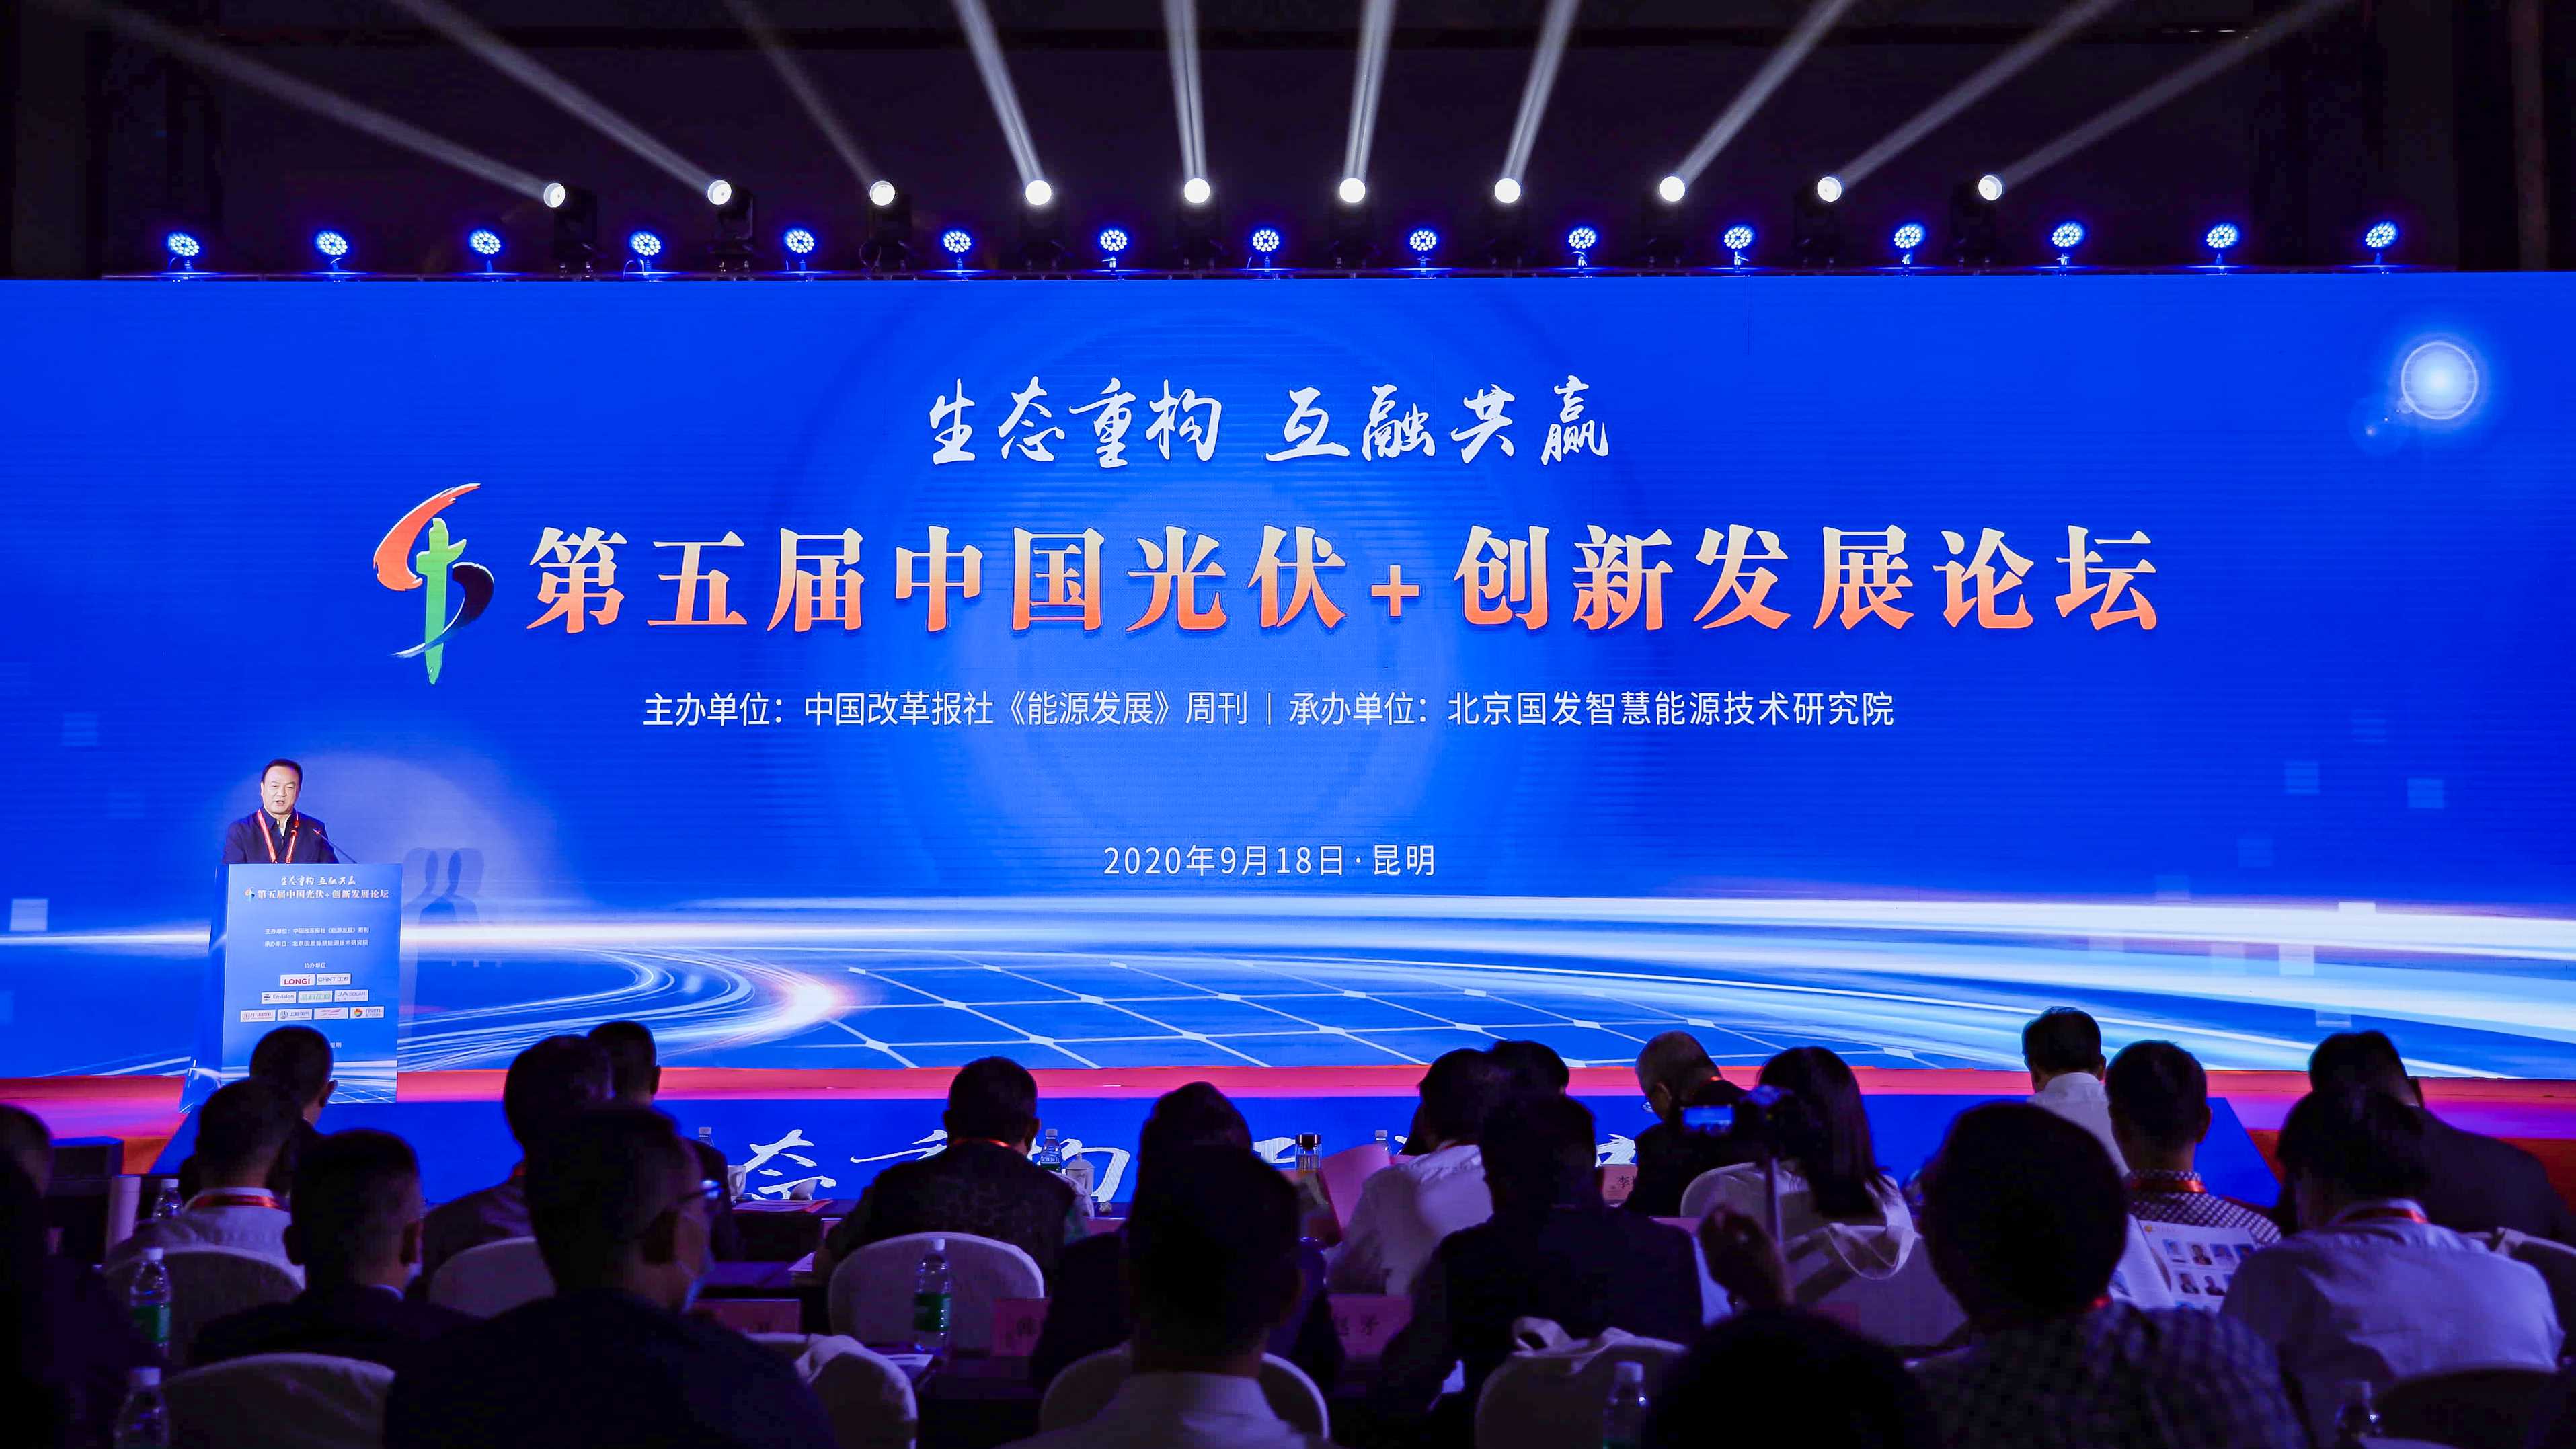 彩神:中国能源发展趋势论坛在京召开